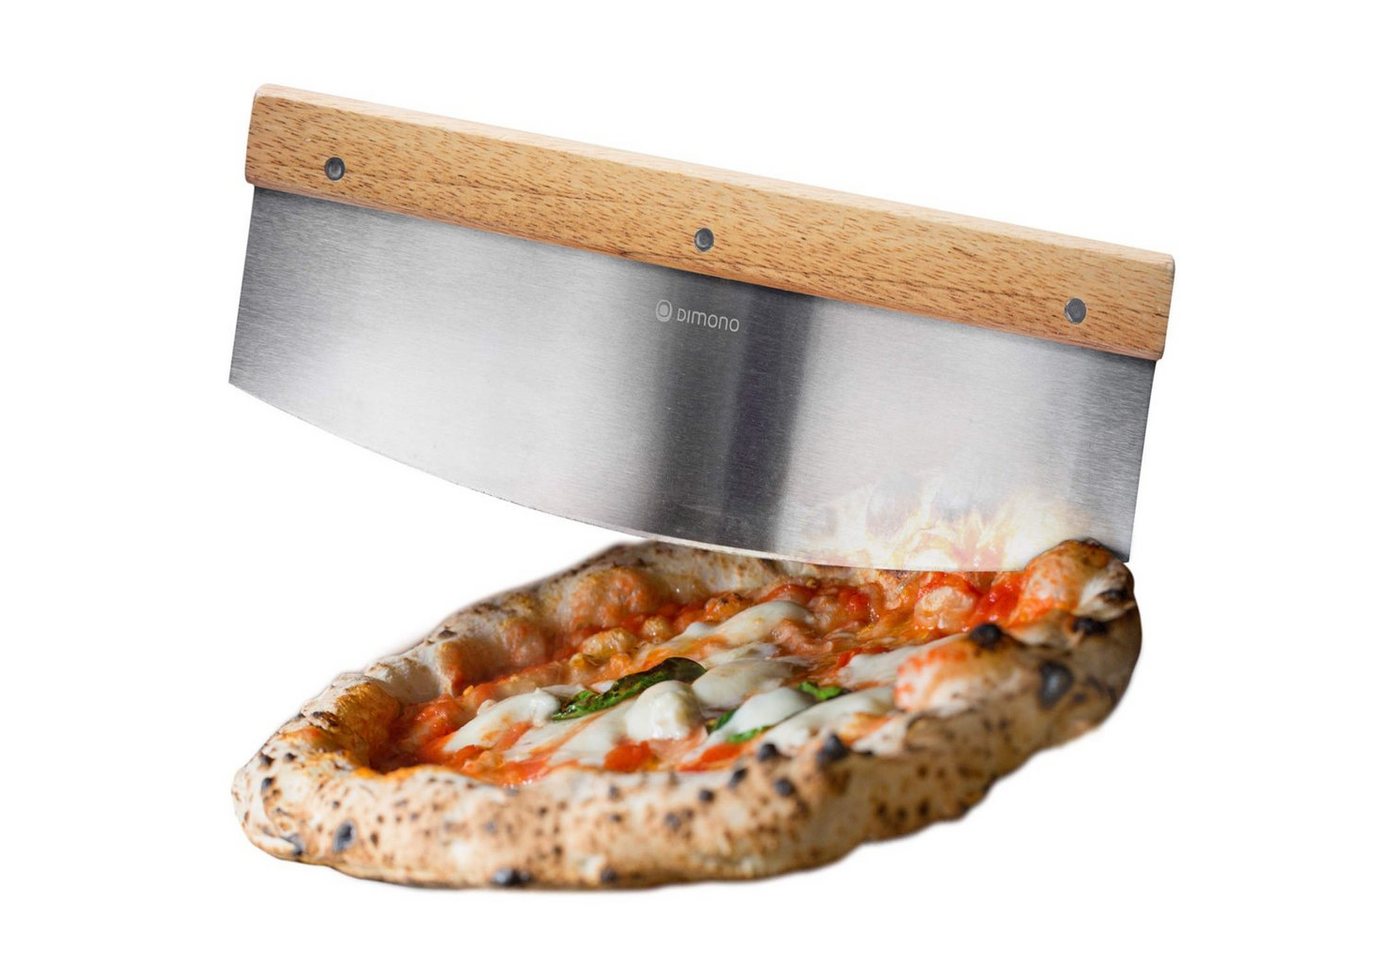 Dimono Pizzamesser Profi Pizzaschneider Wiegemesser Kräuter-Schneider Cutter mit Holz-Griff von Dimono